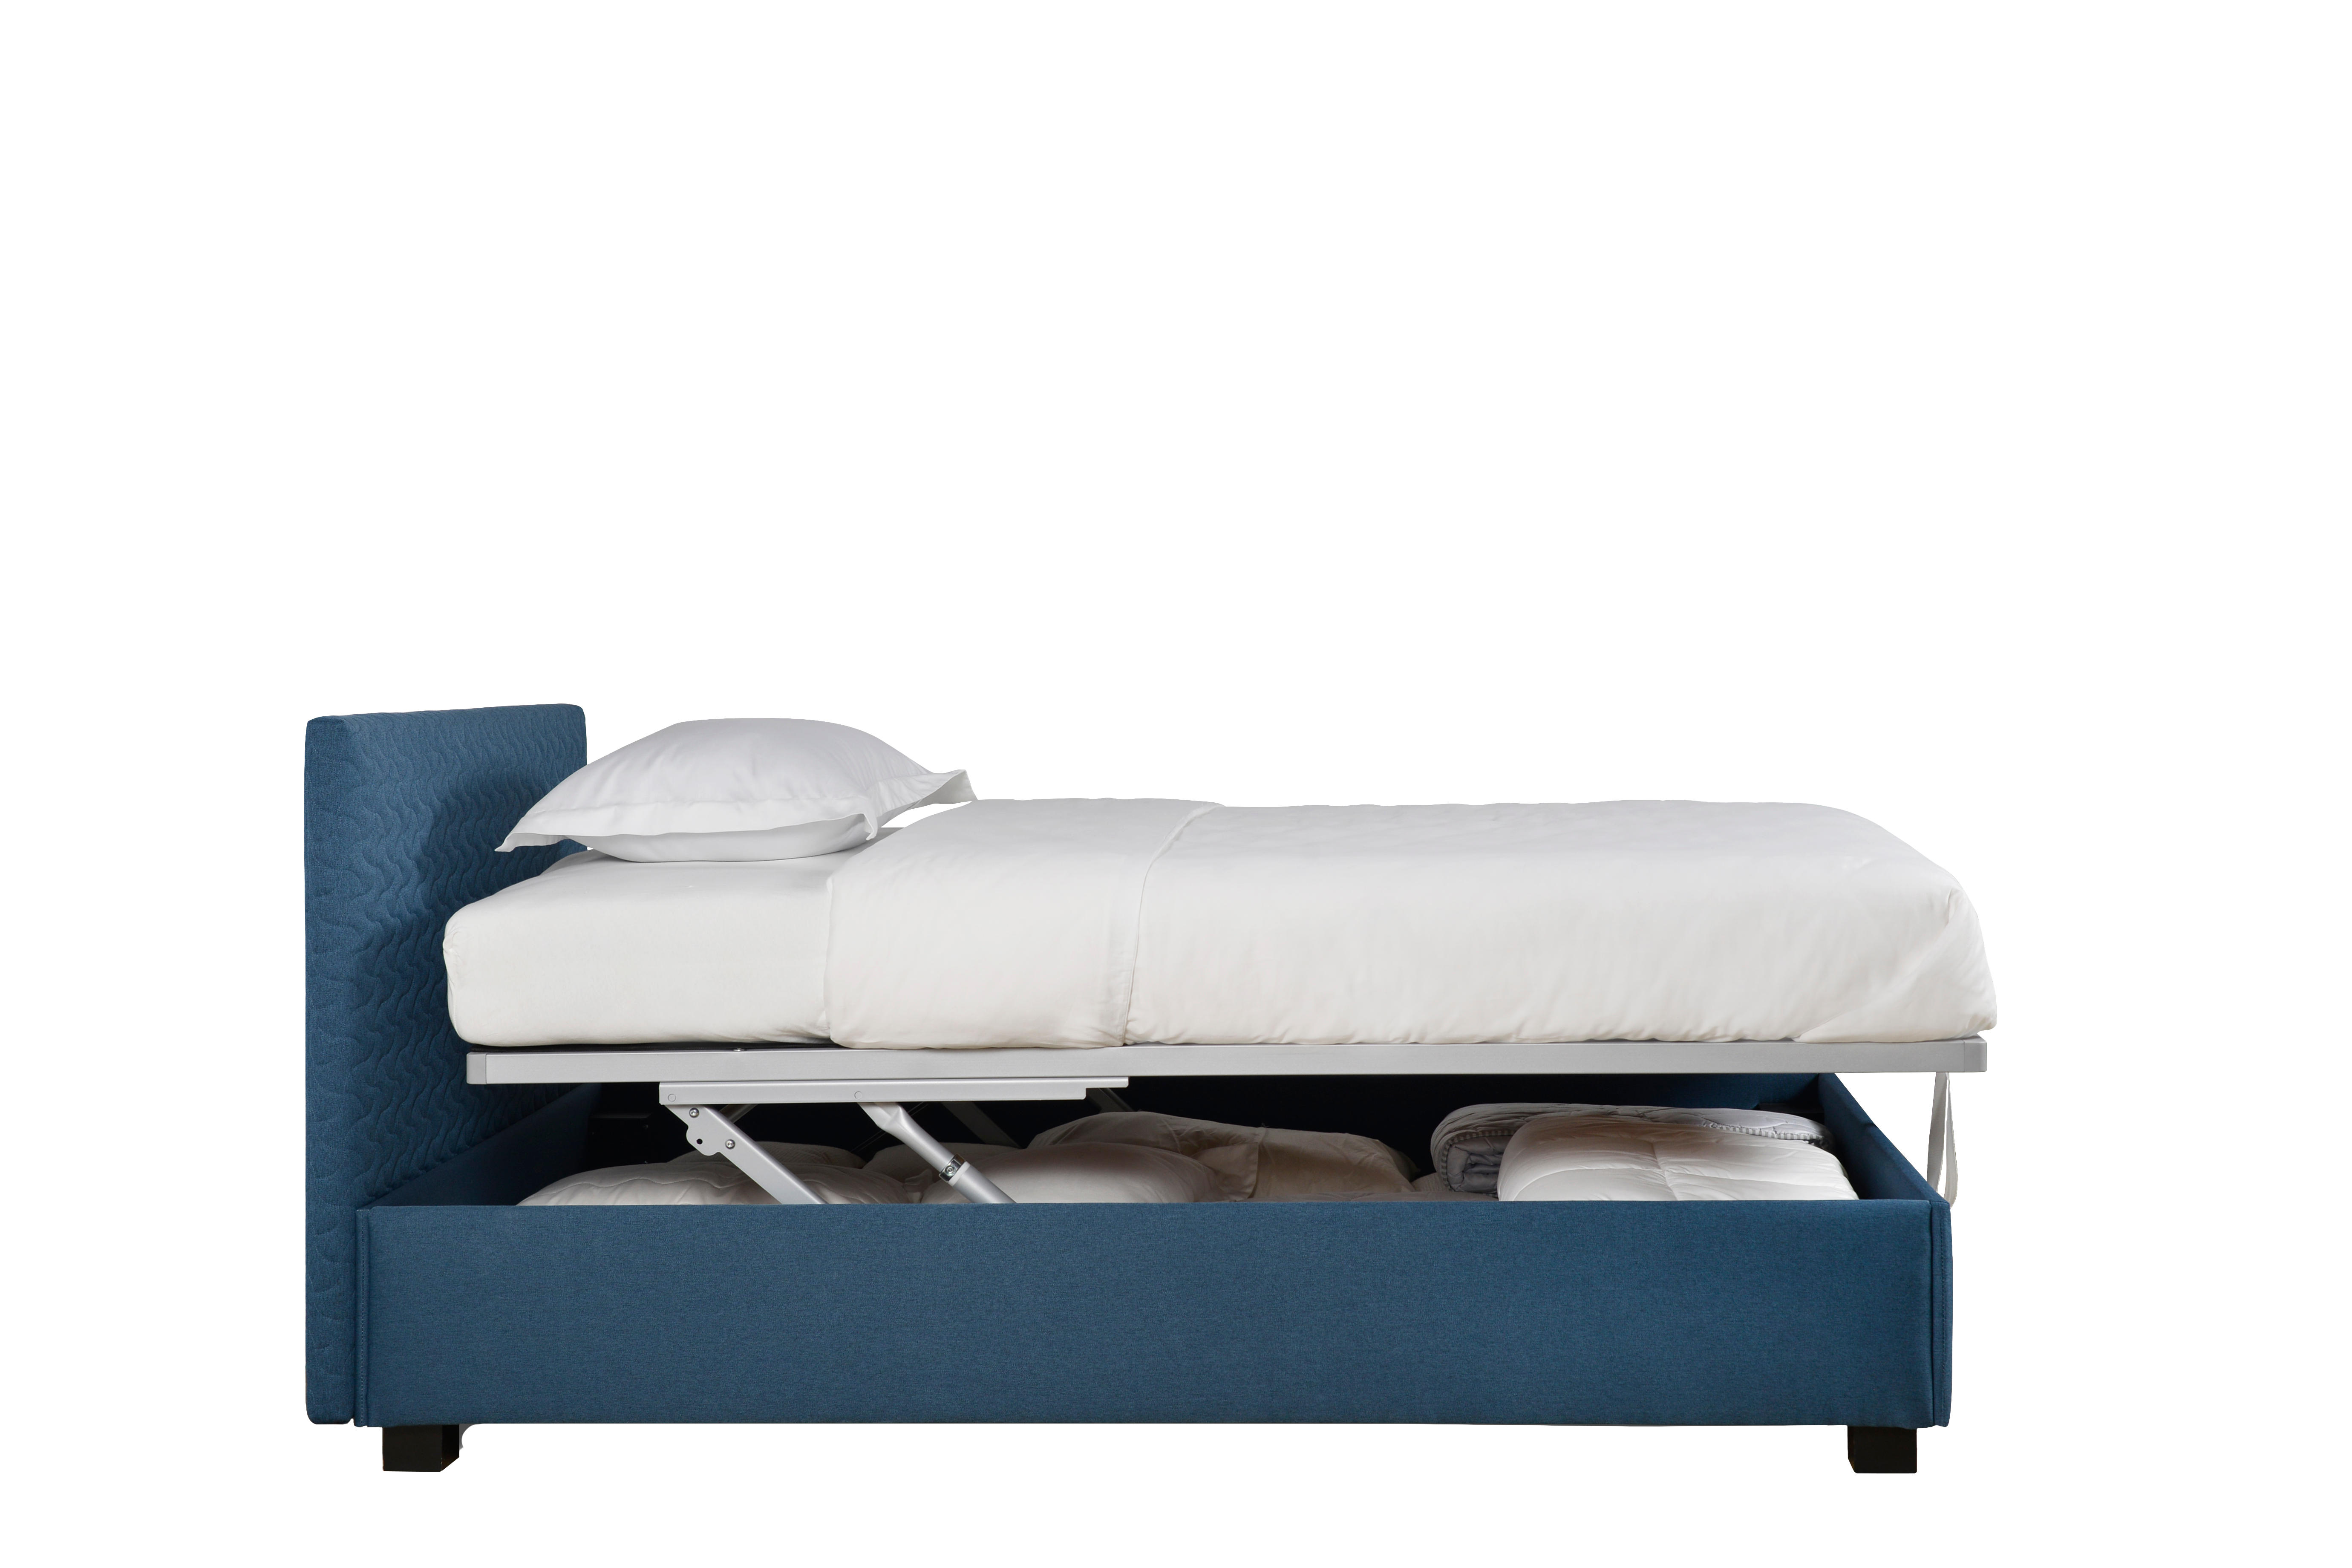 Otroska postelja Capri KN s prakticnim prostorom za shranjevanje